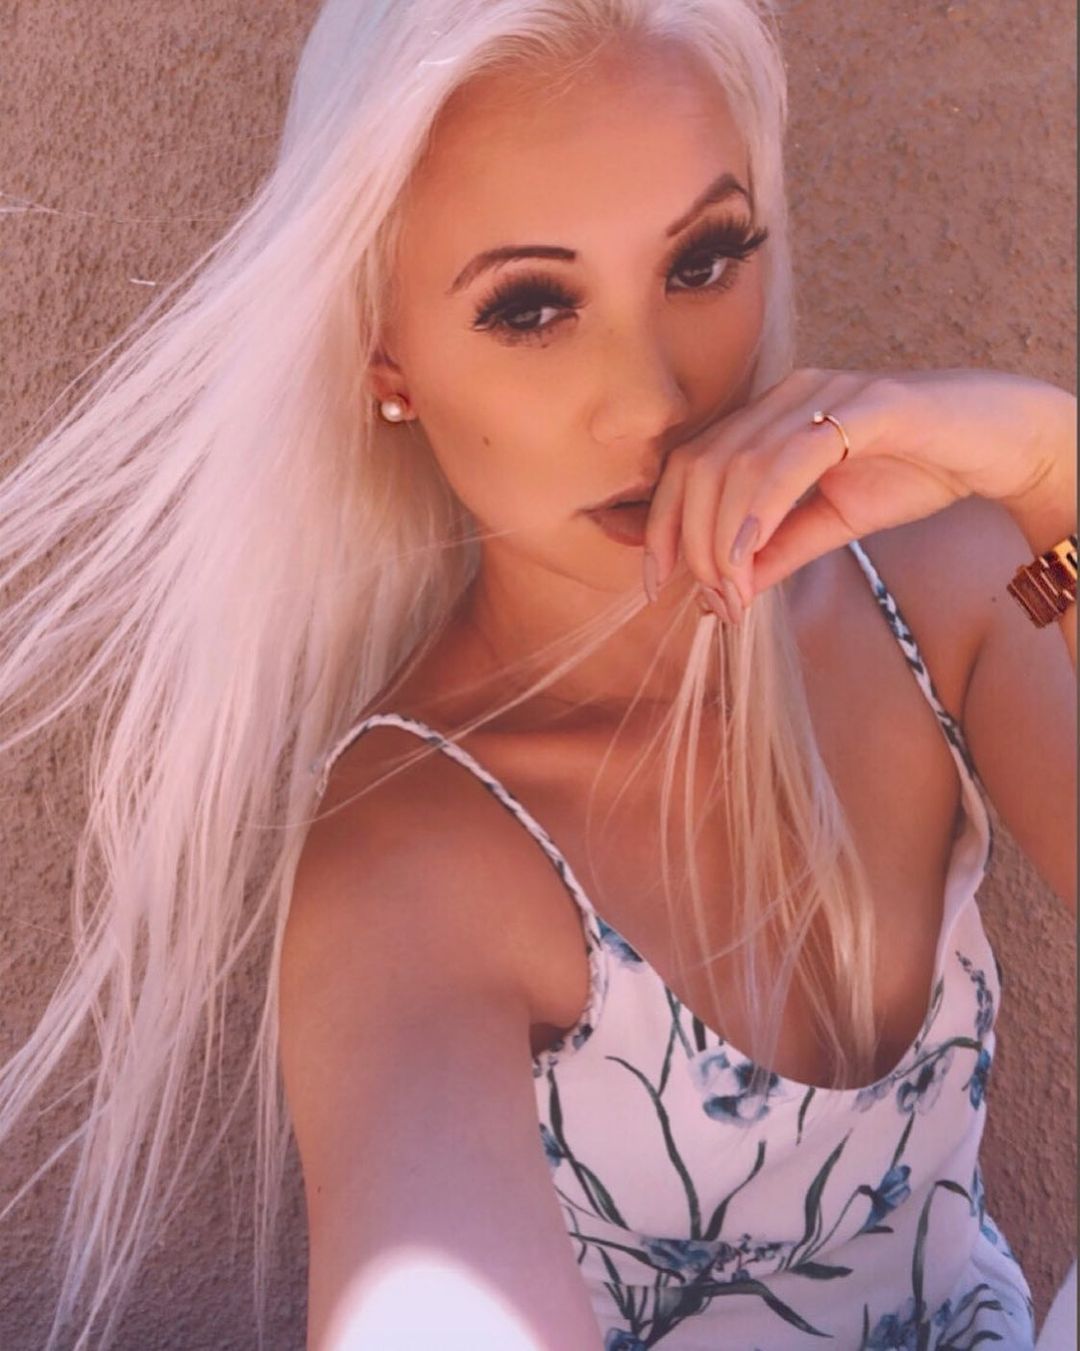 Amazing blonde slut private pics leaked